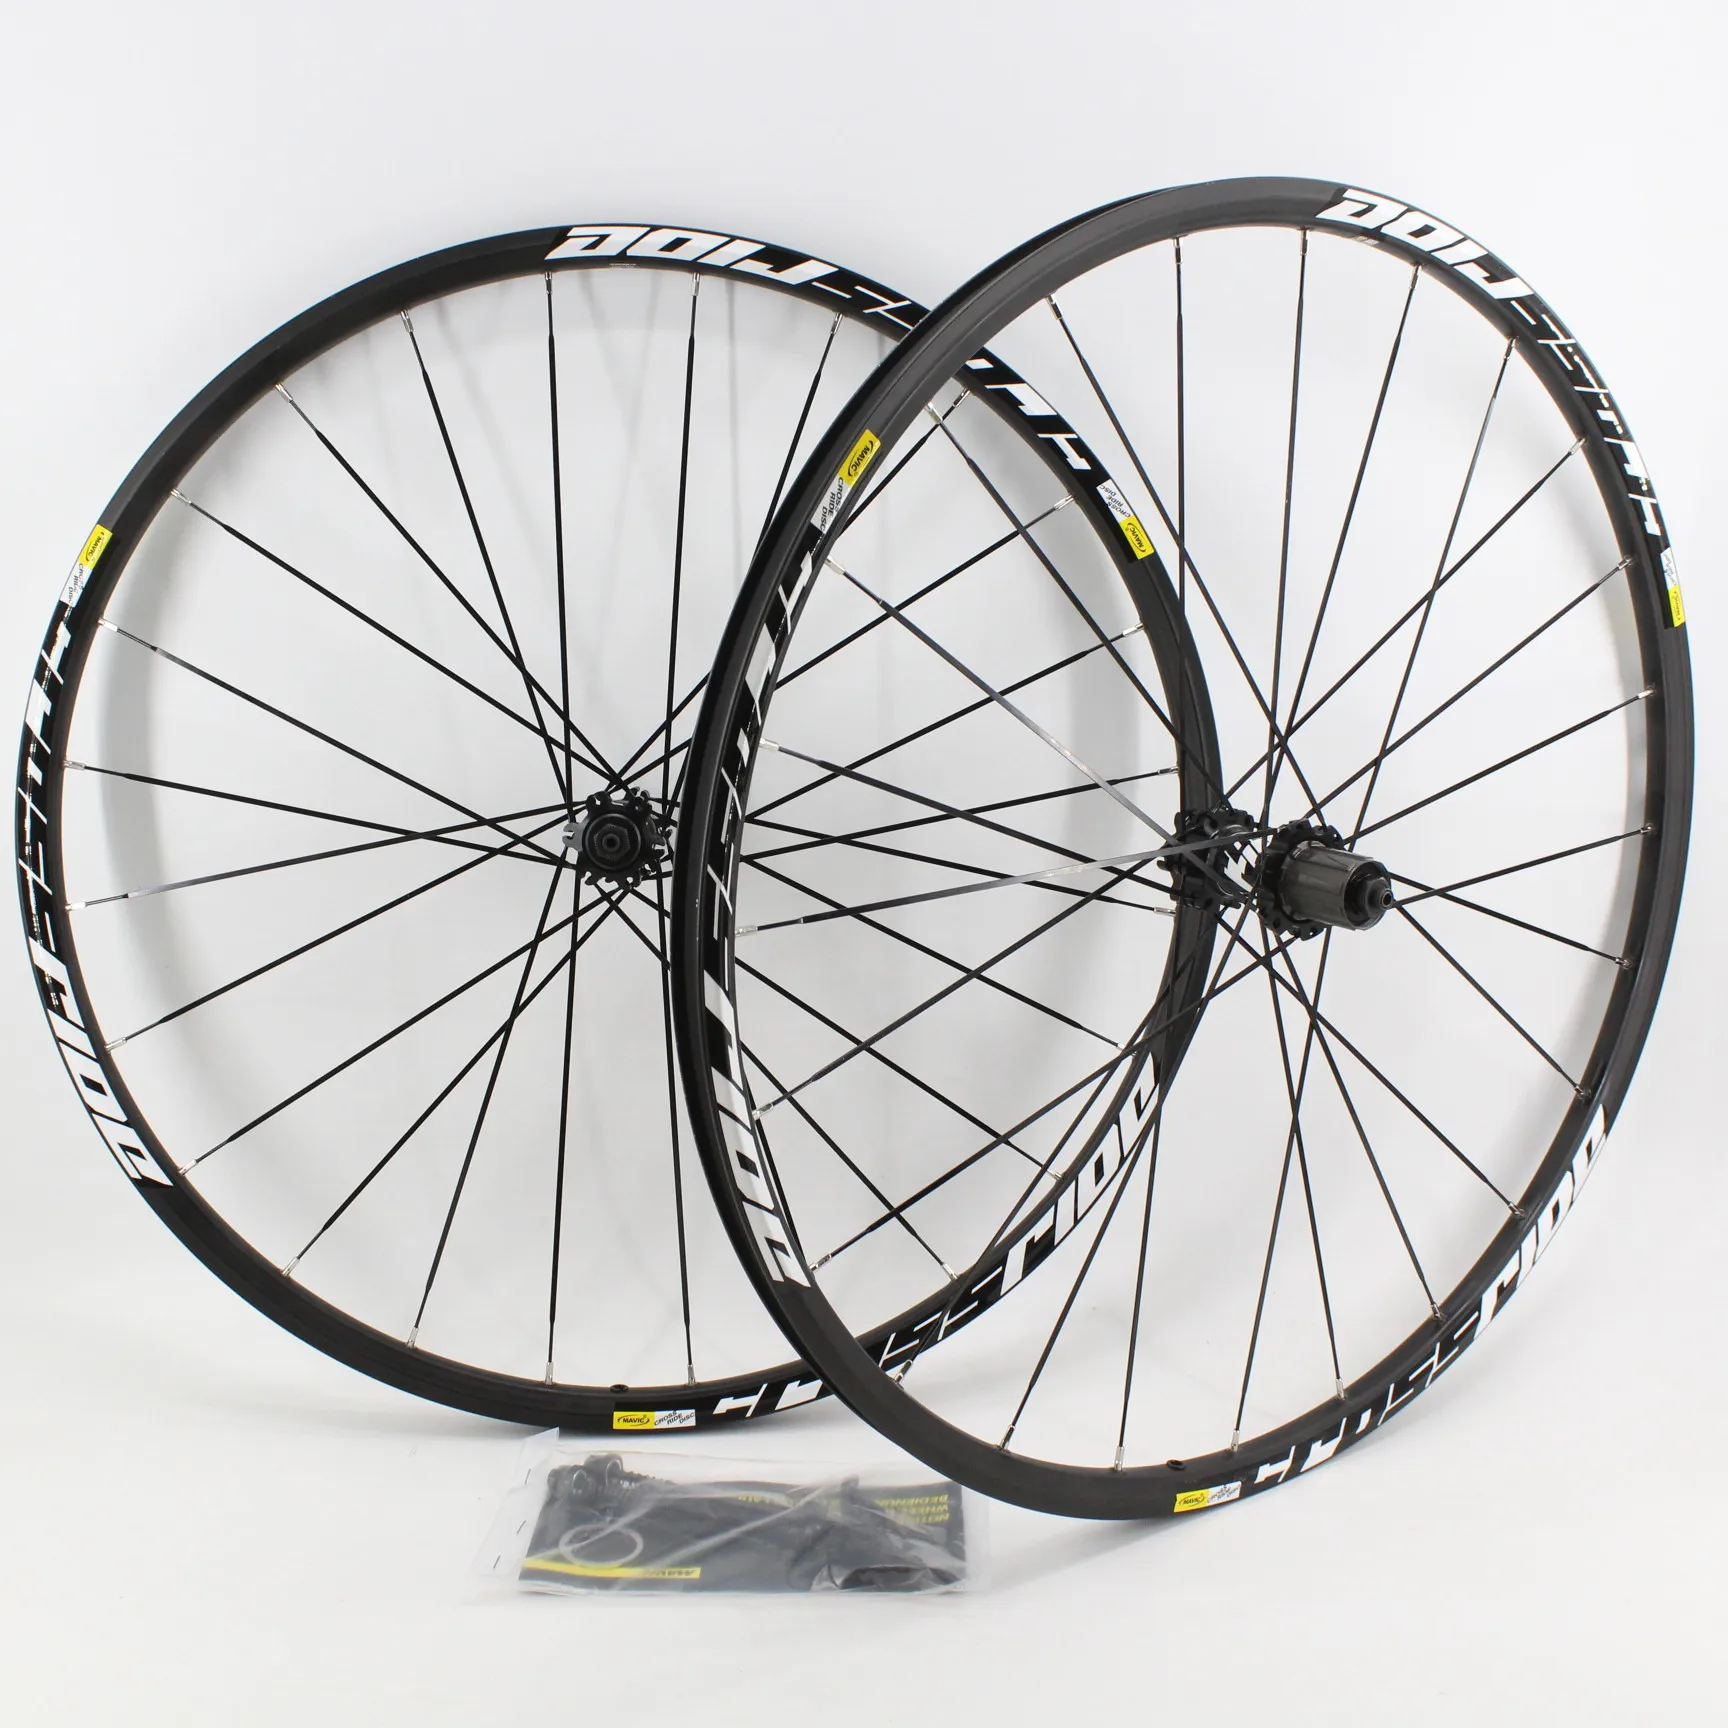 Juego de ruedas de aleación de aluminio para bicicleta de montaña, bujes de freno de disco, bloqueo central, 26/27.5/29er, nuevo, envío gratis